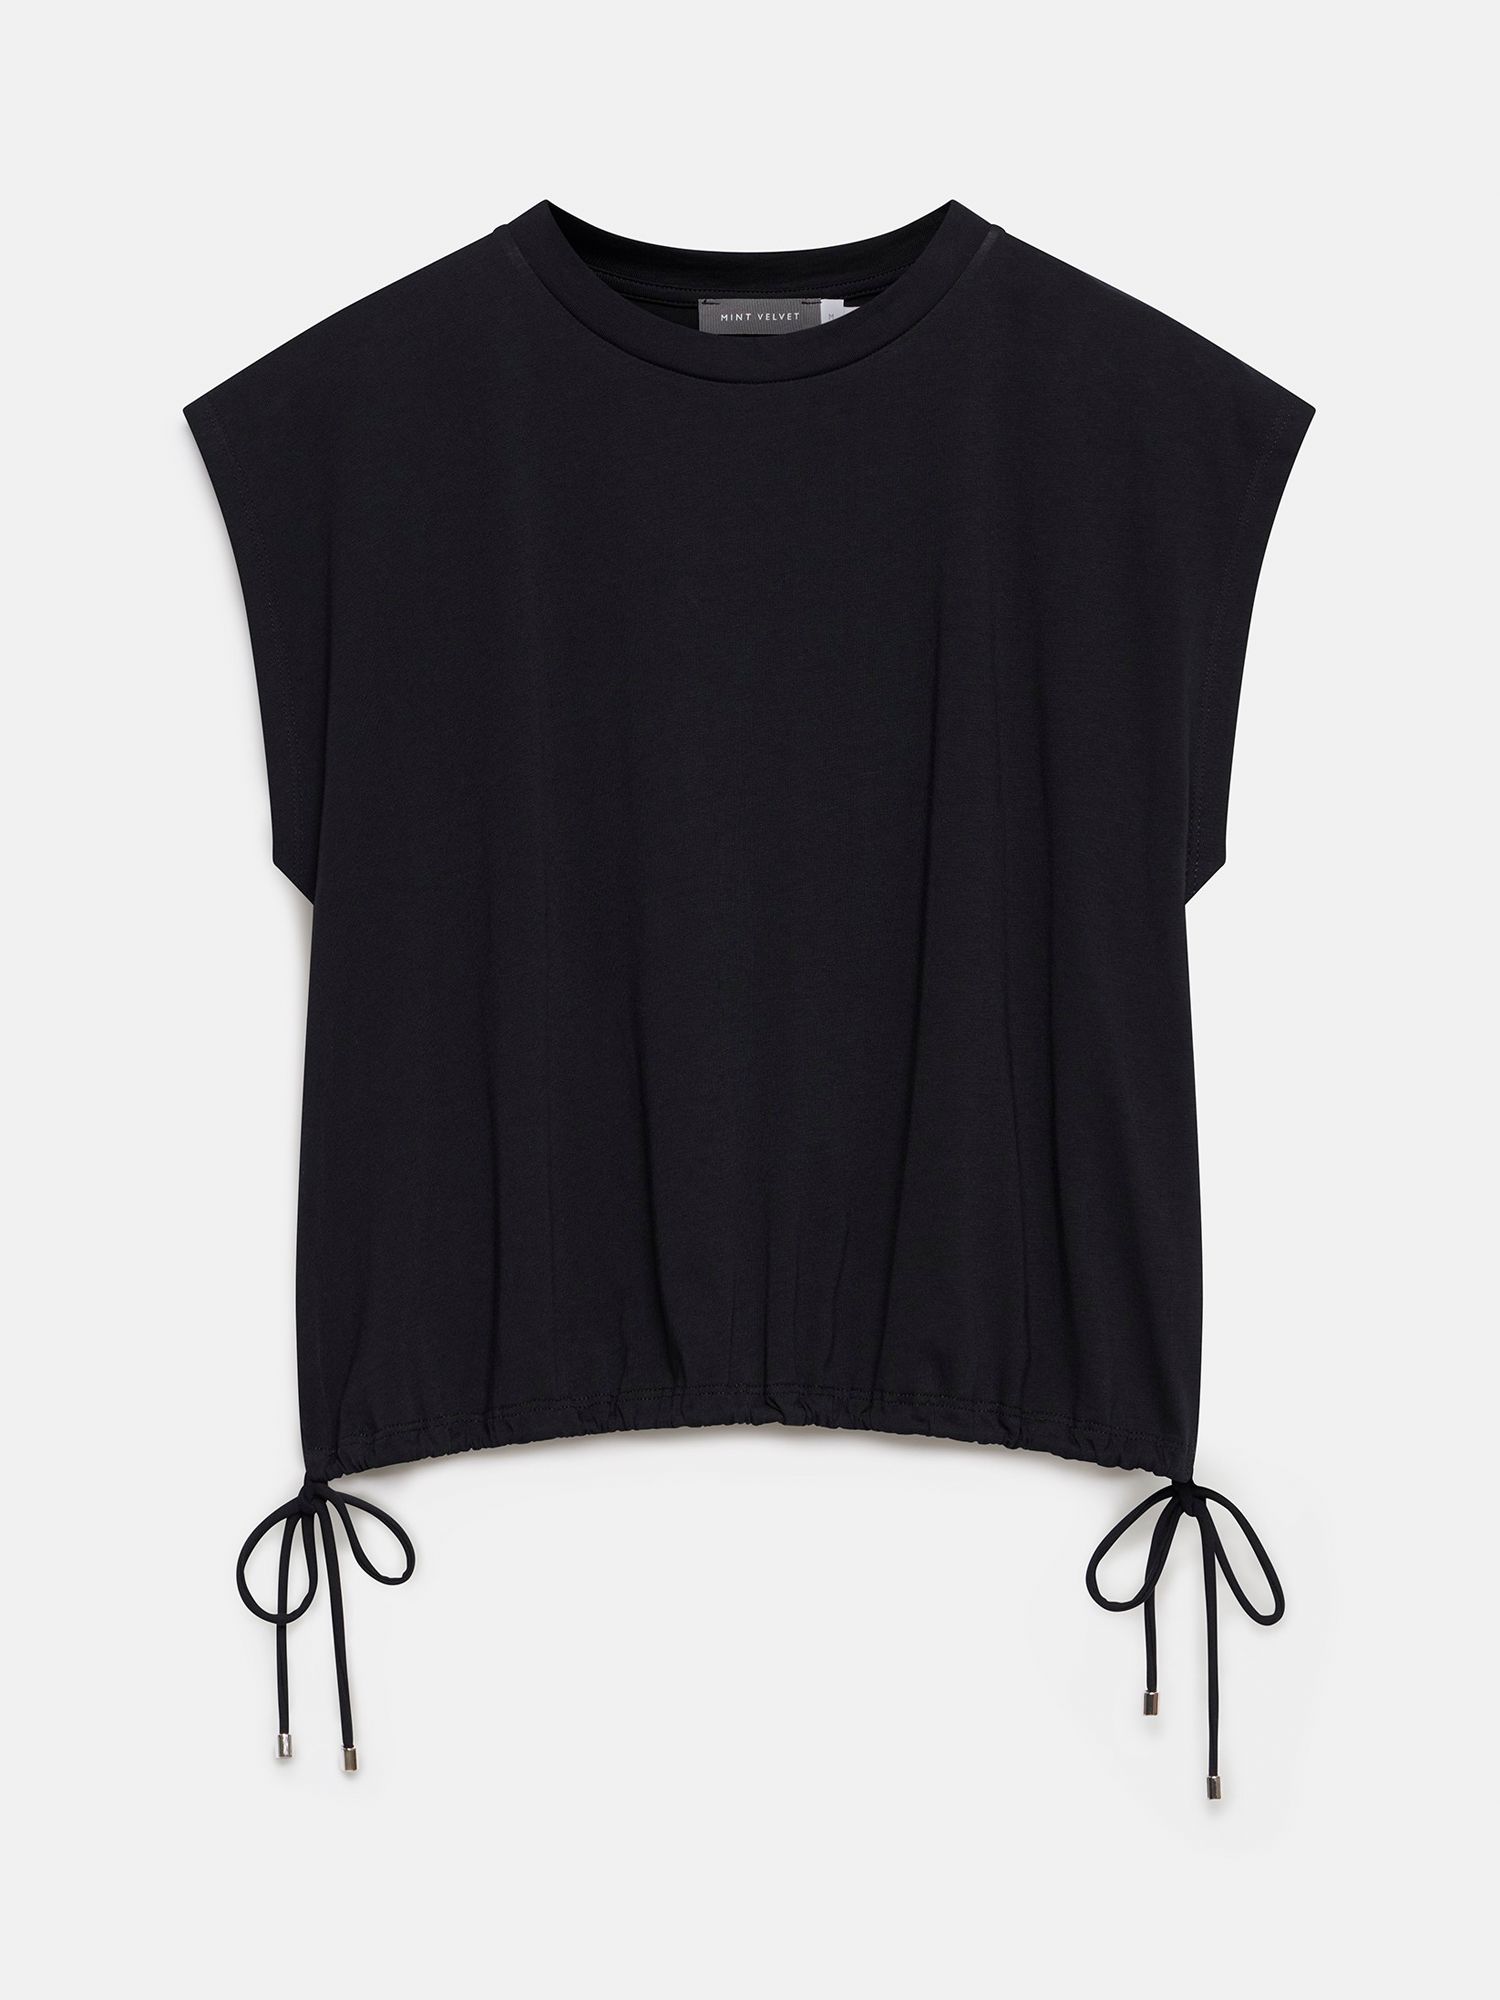 Mint Velvet Utility Cotton T-Shirt, Black, L